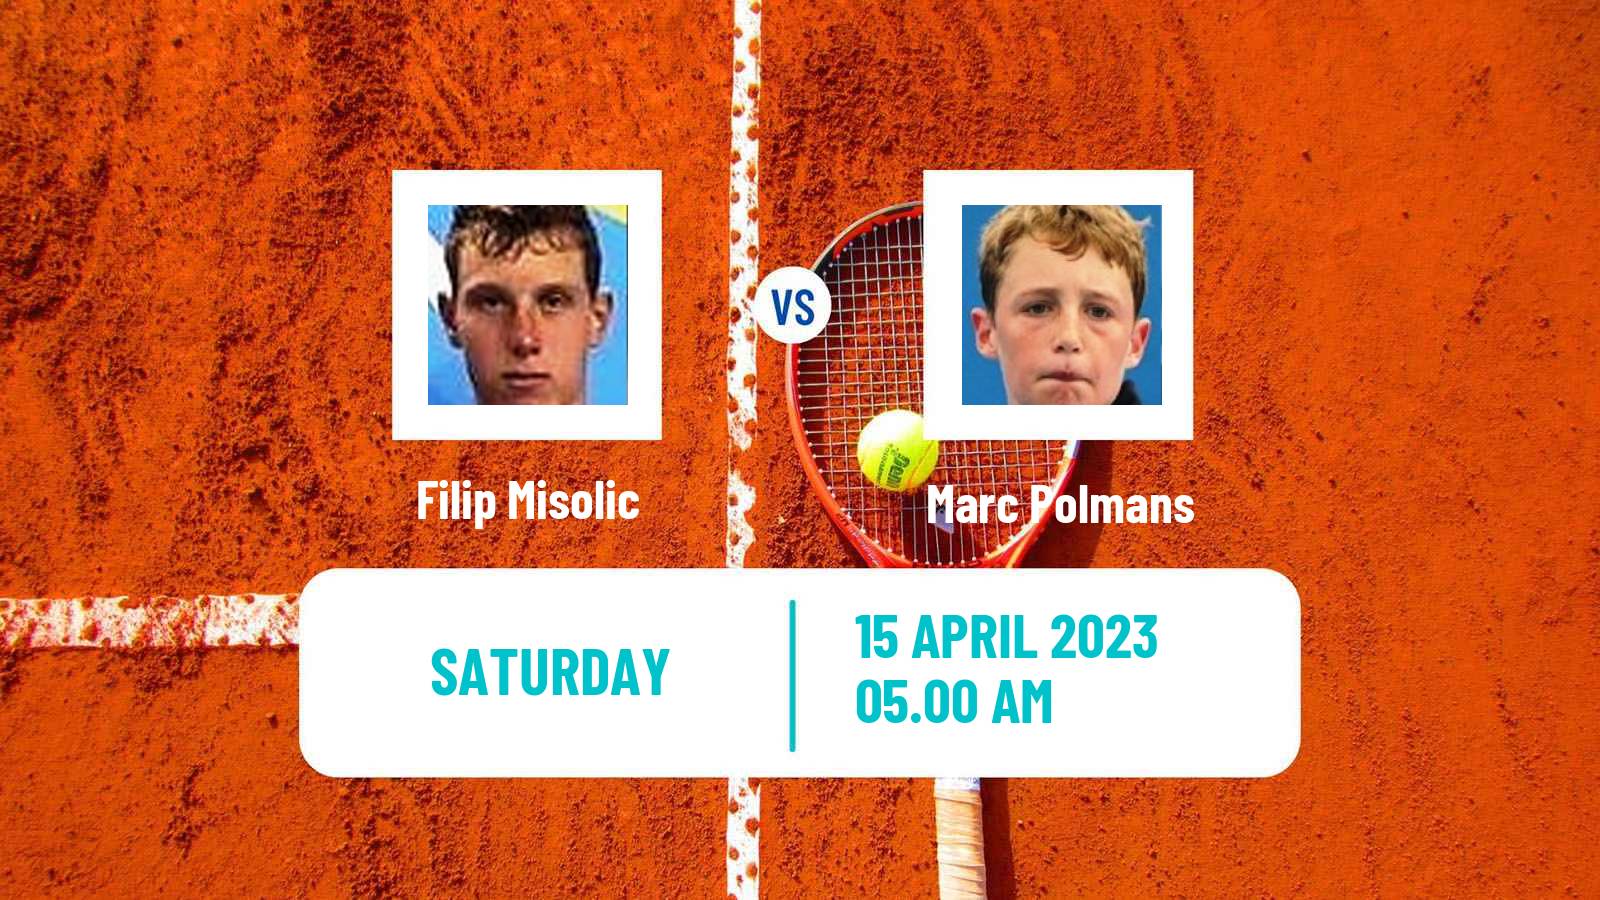 Tennis ATP Challenger Filip Misolic - Marc Polmans